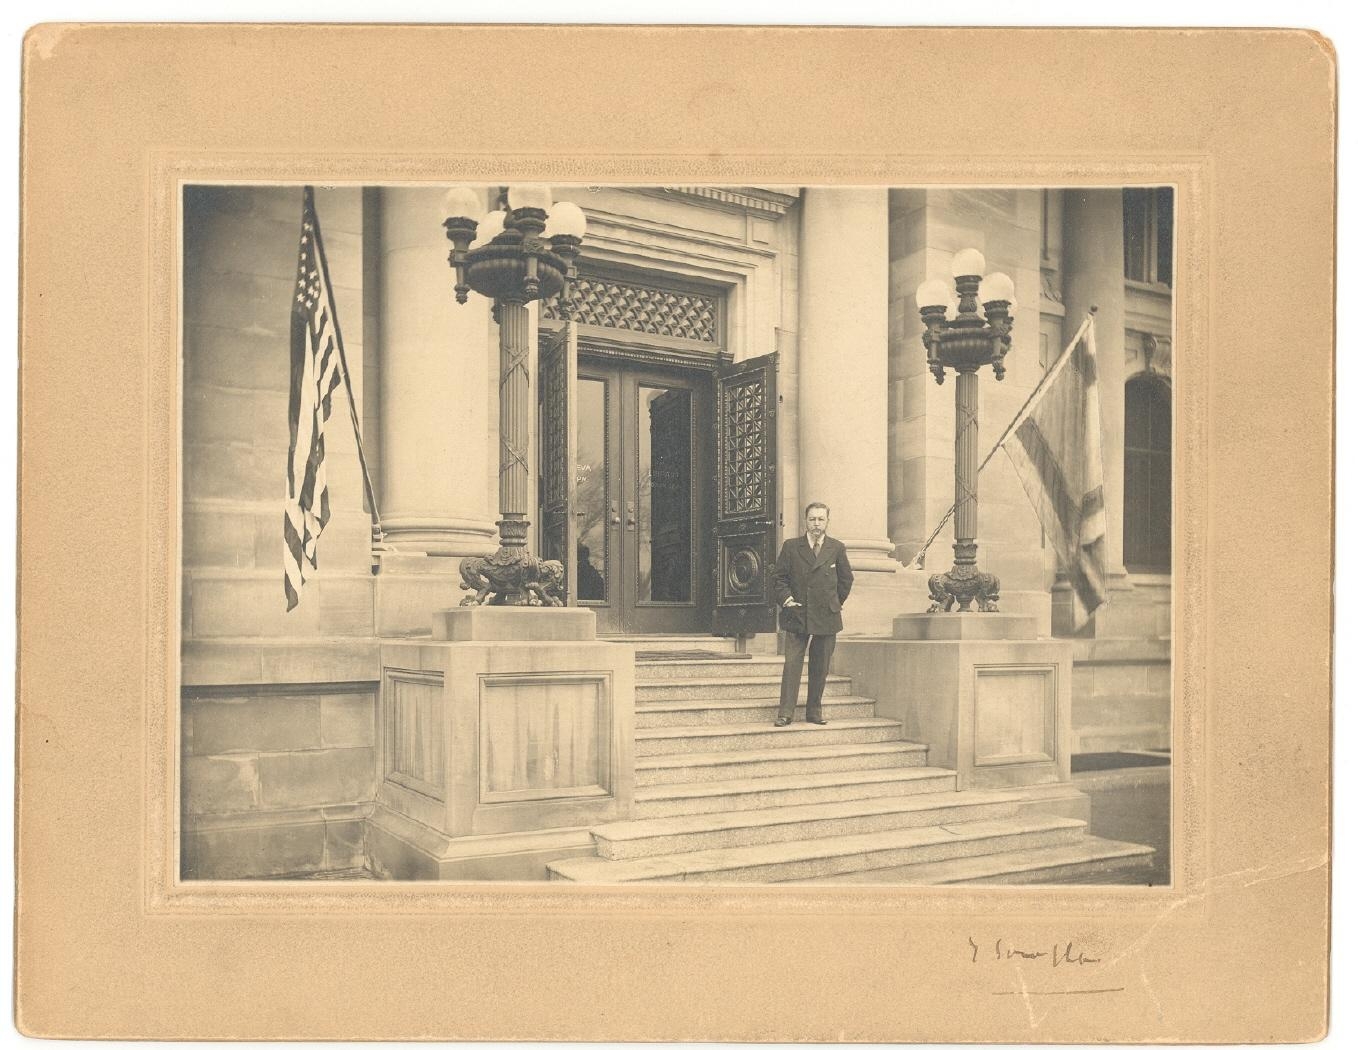 Retrato de Joaquín Sorolla Bastida en la escalinata de entrada al edificio de La Hispanic Society of America de Nueva York, engalanada con las banderas de España y de los Estados Unidos, probablemente el día de la inauguración de la exposición monográfica del artista.